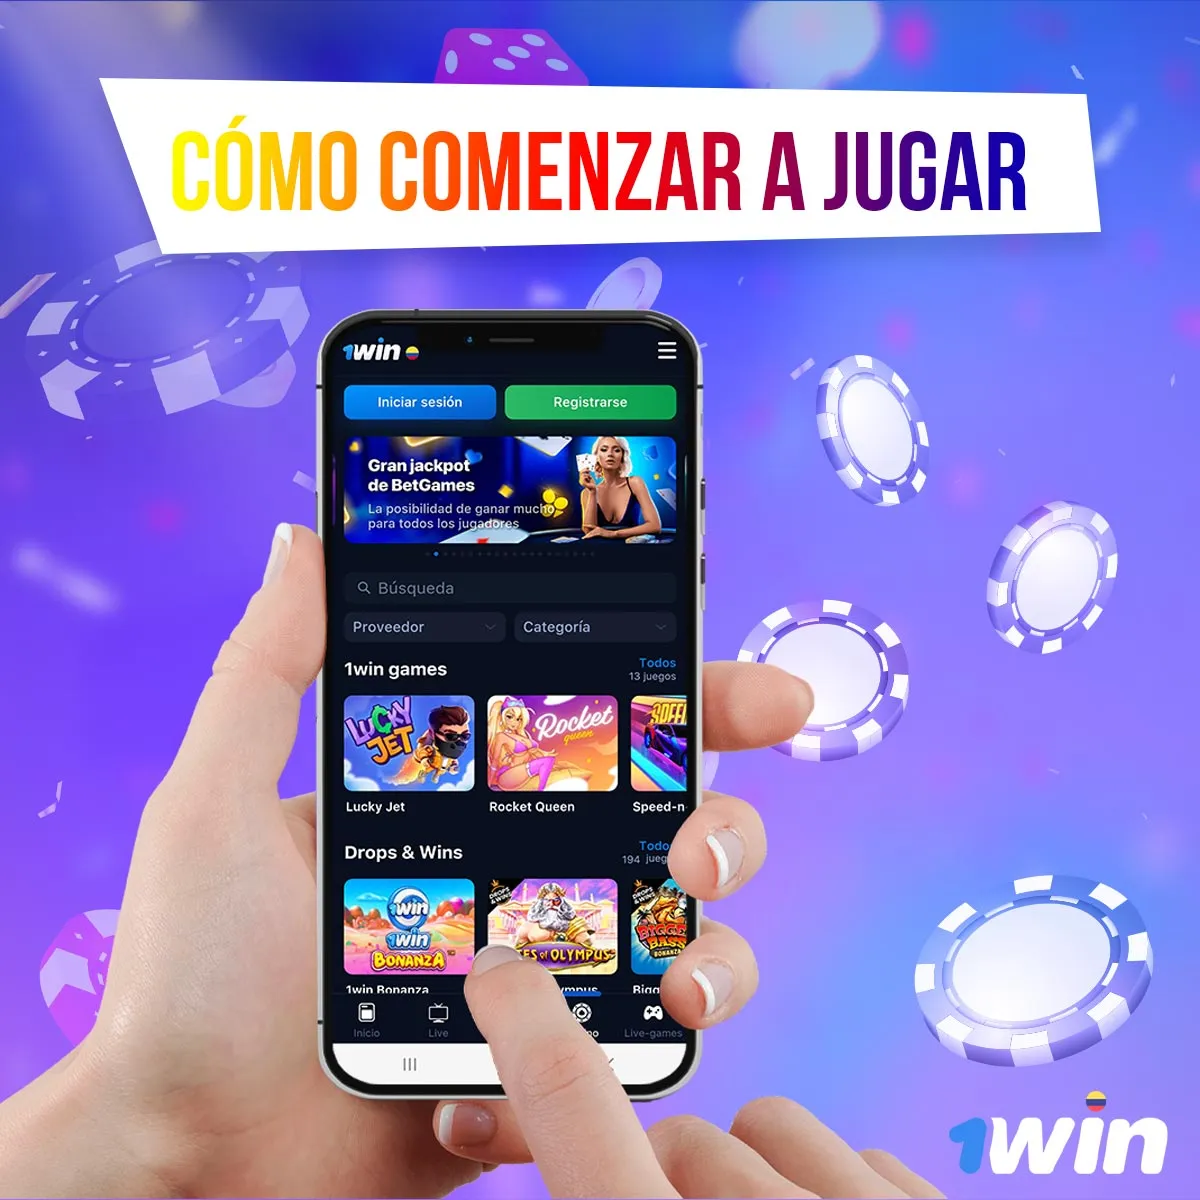 1win es el mejor casino online de Colombia con una gran selección de juegos de azar